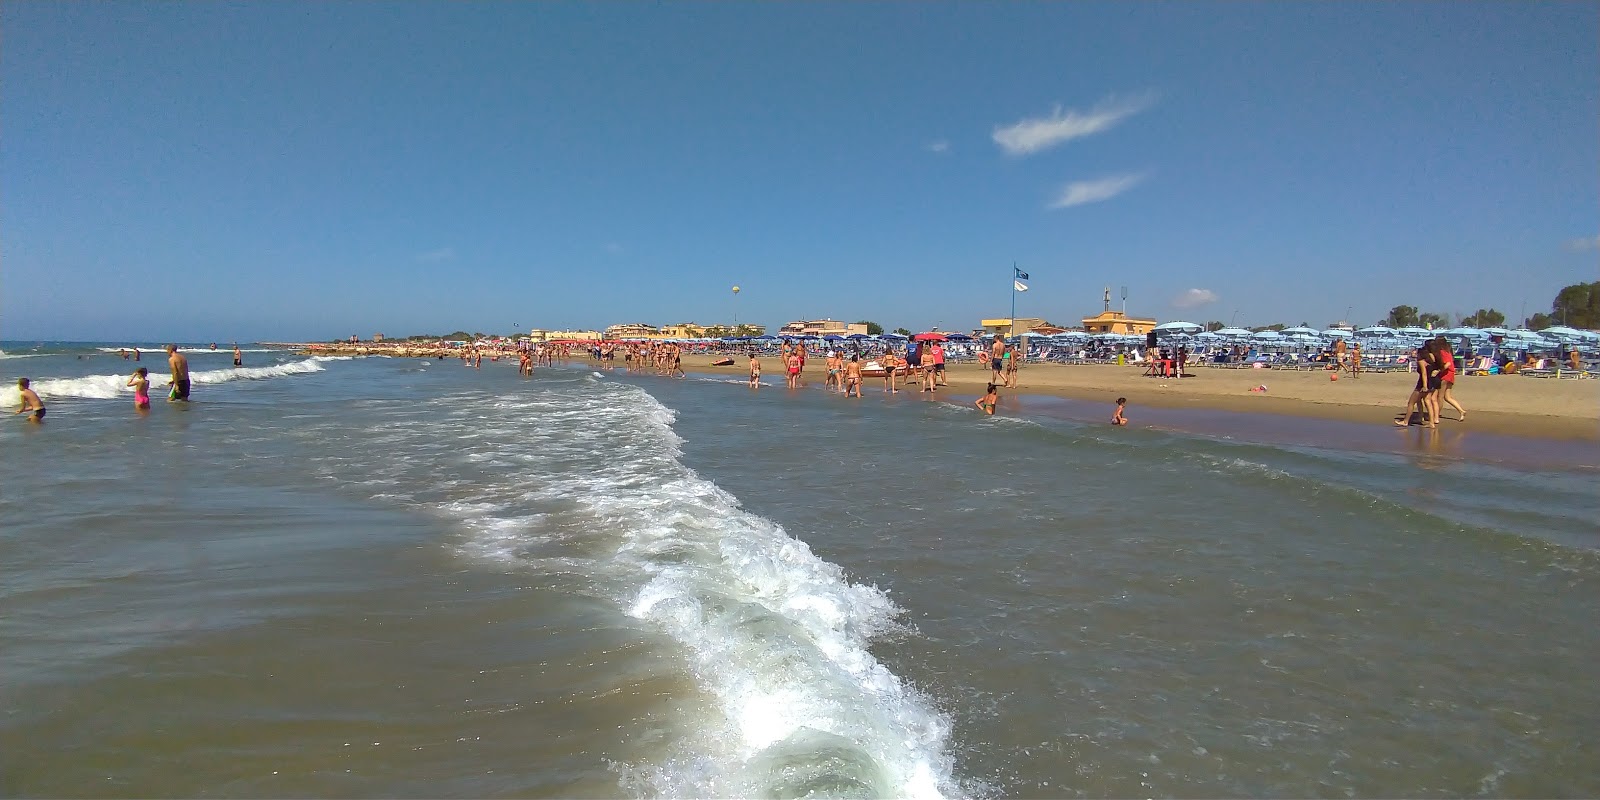 Fotografija Spiaggia Attrezzata z modra voda površino